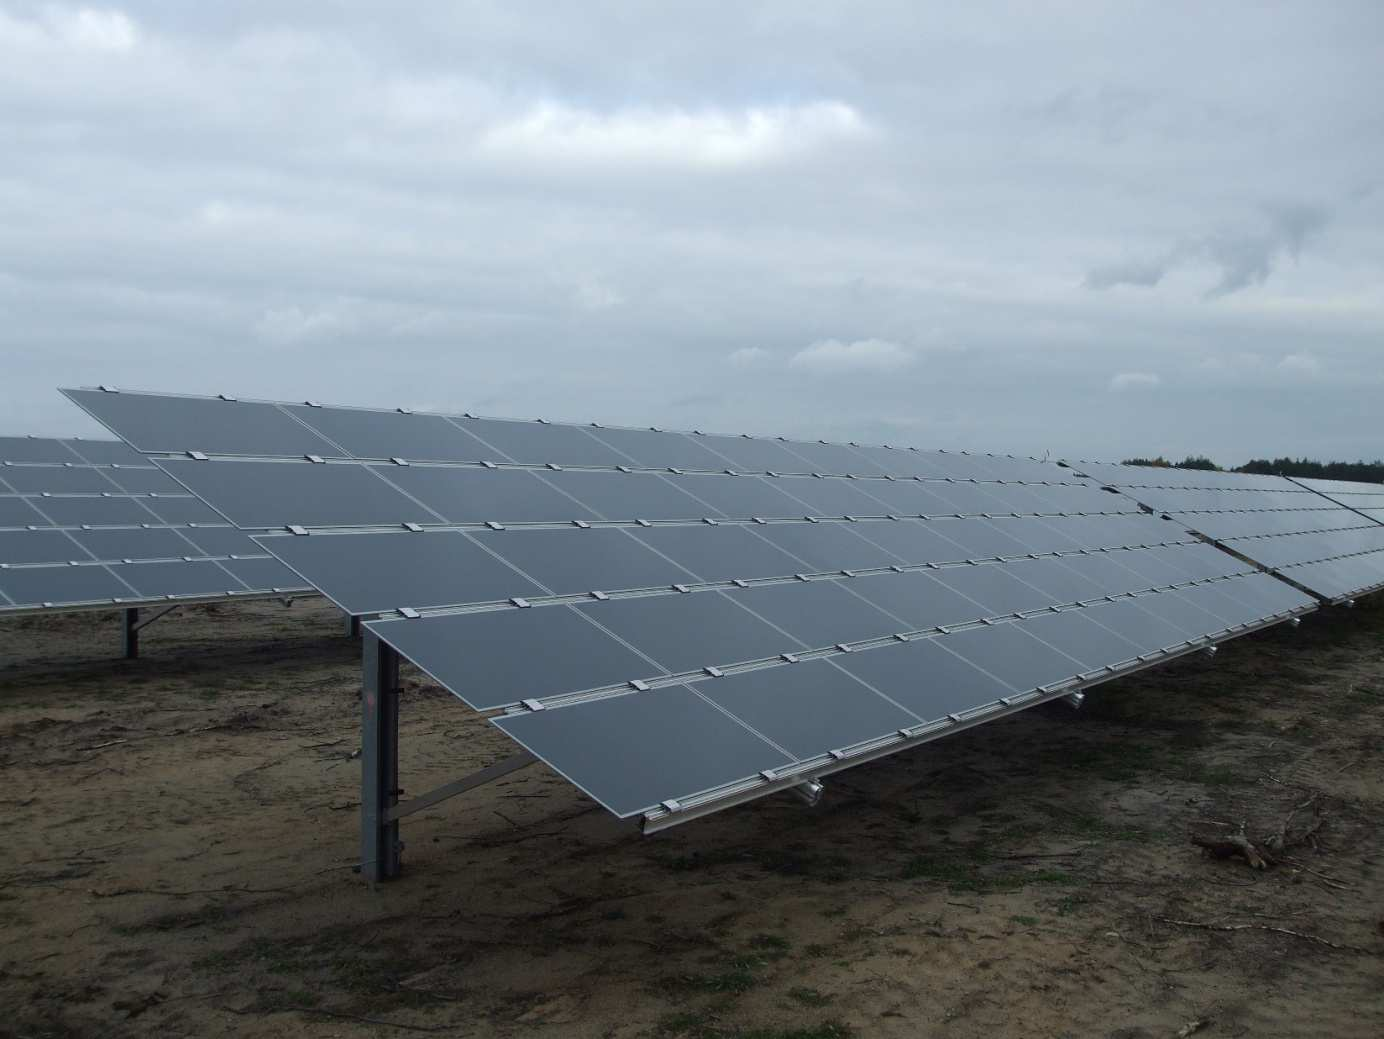 Fot. Farma fotowoltaiczna. 88 W gminie Kraśniczyn energia słoneczna może stanowić jedno z głównych alternatywnych źródeł energii.